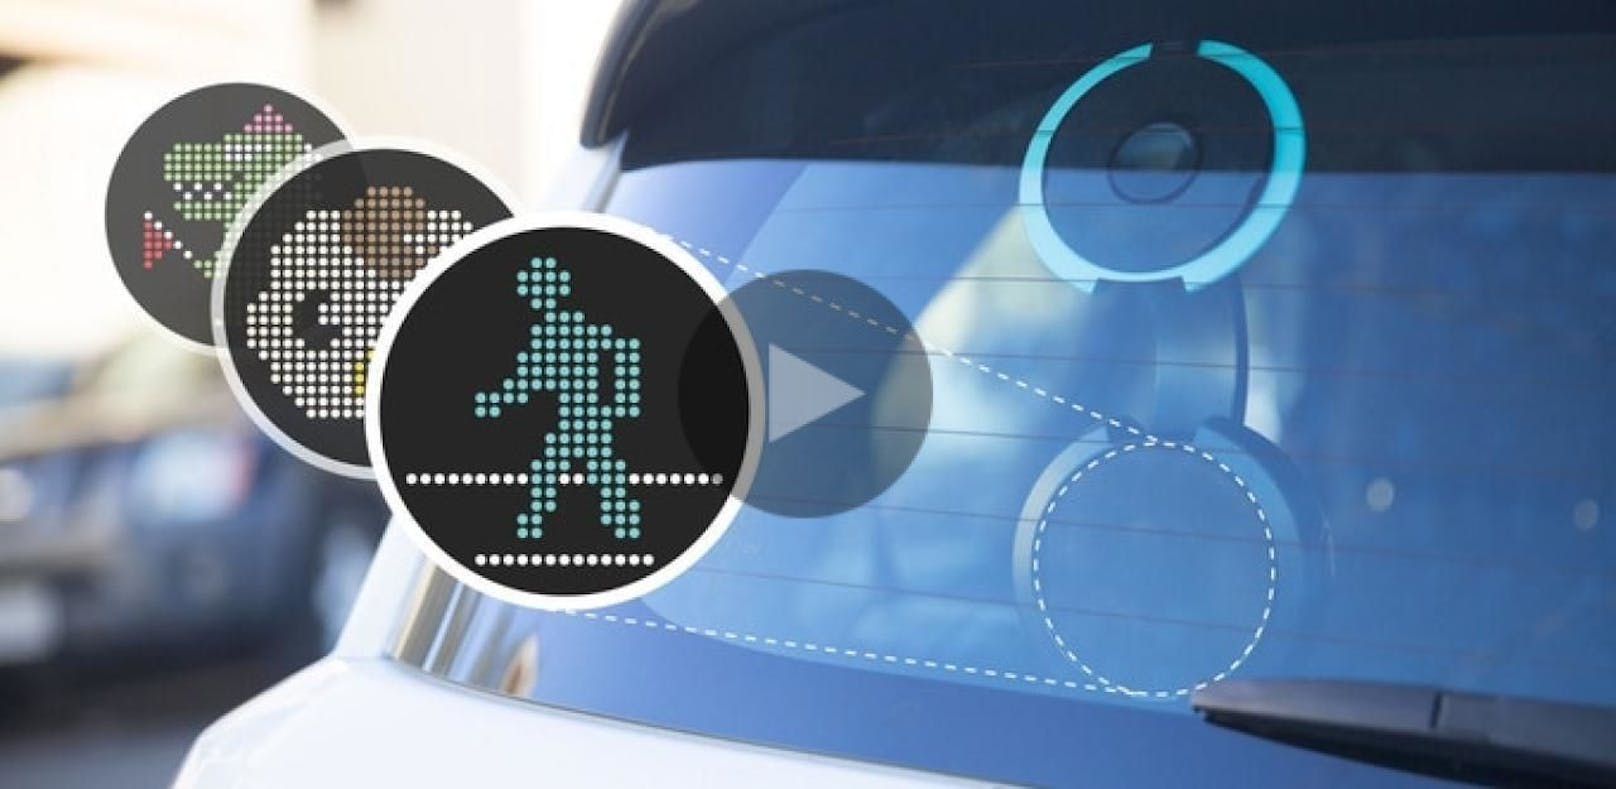 Autofahrer können bald mit Emojis kommunizieren – Digital